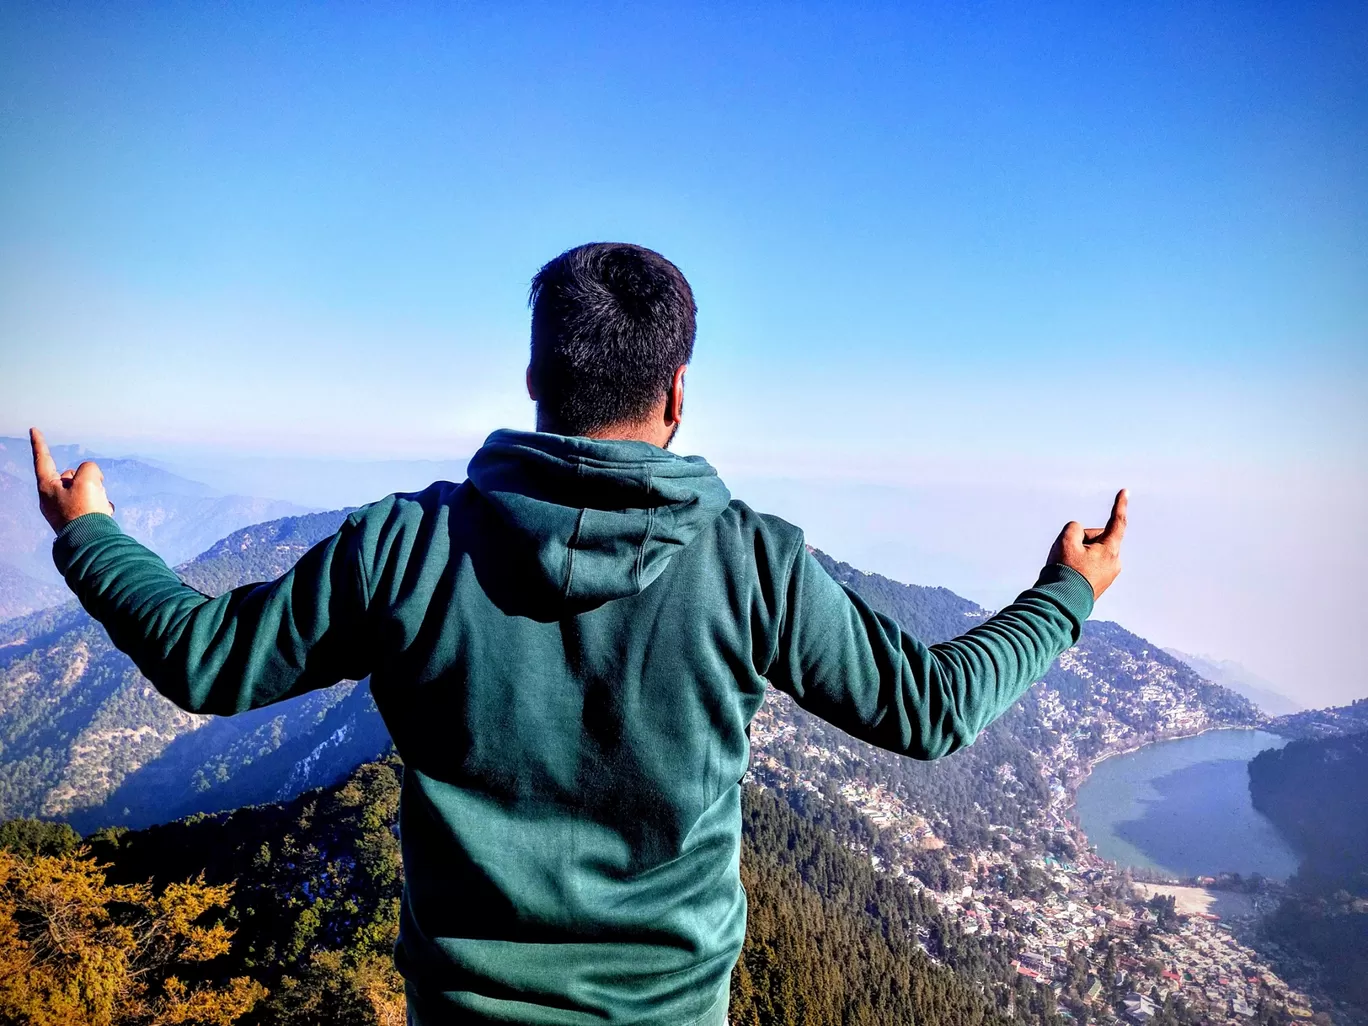 Photo of Naina Peak By Gaurvit Bhatia